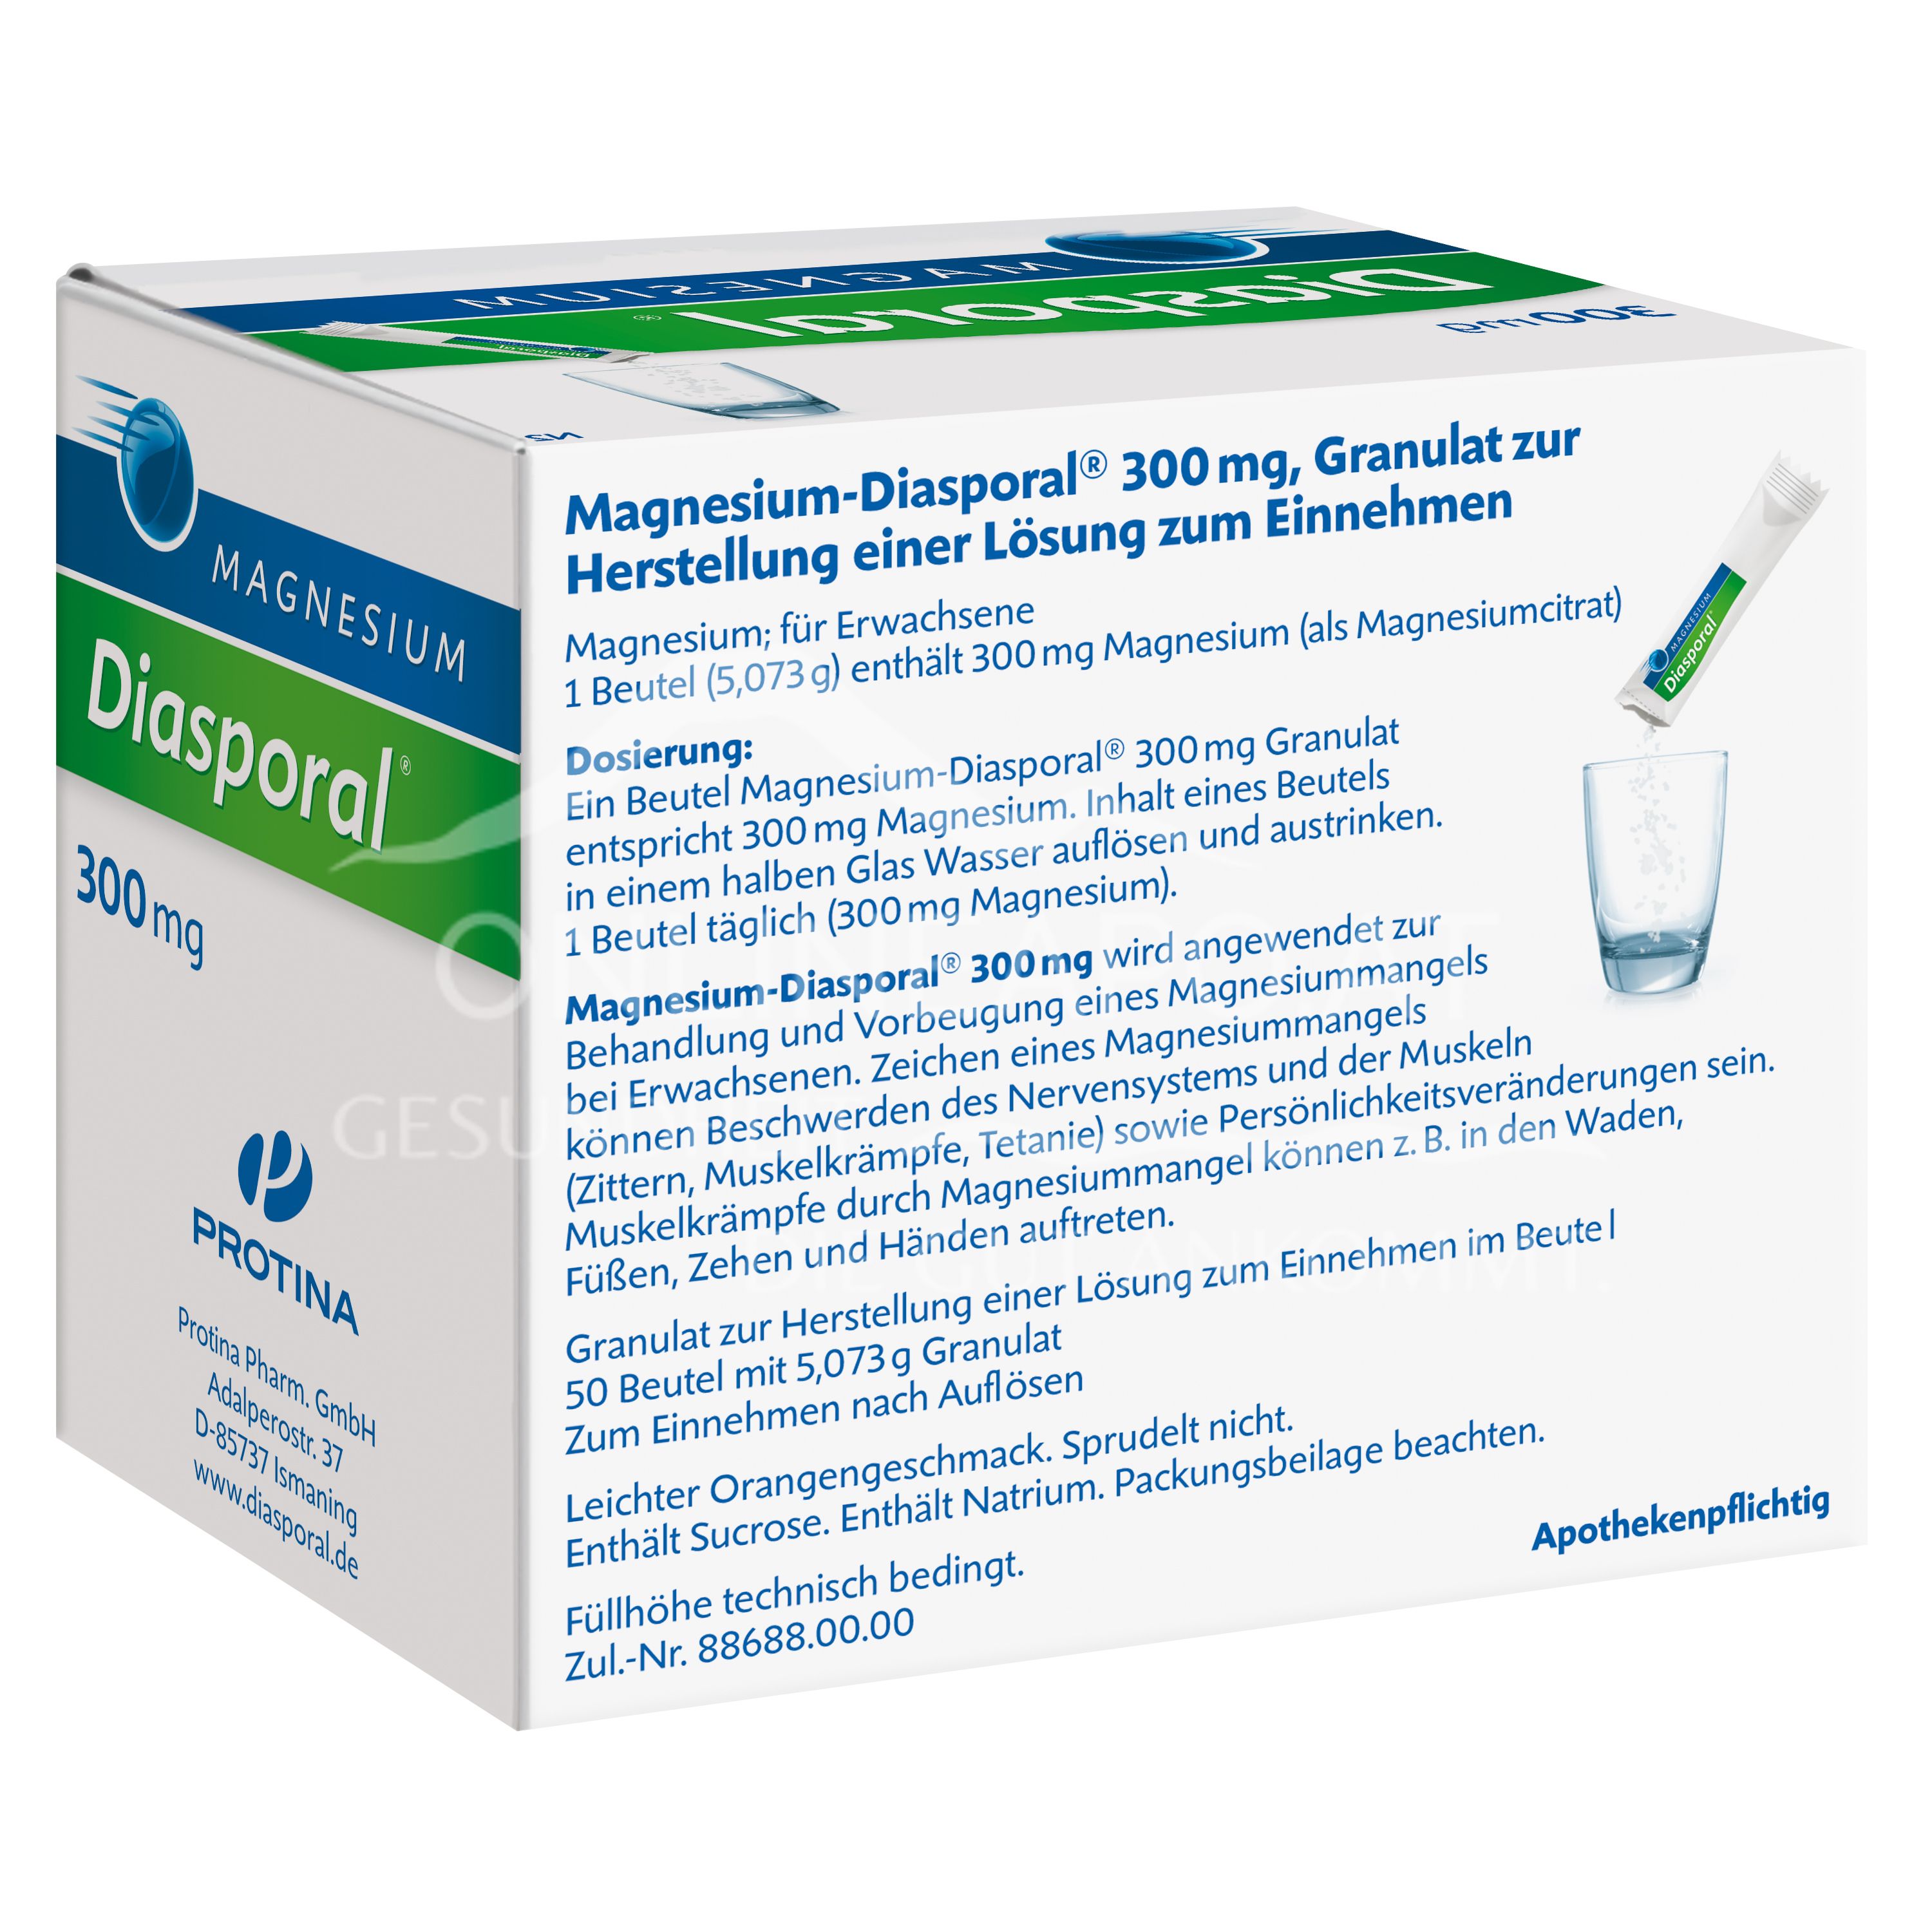 Magnesium Diasporal 300 mg Granulat zur Herstellung einer Lösung zum Einnehmen 